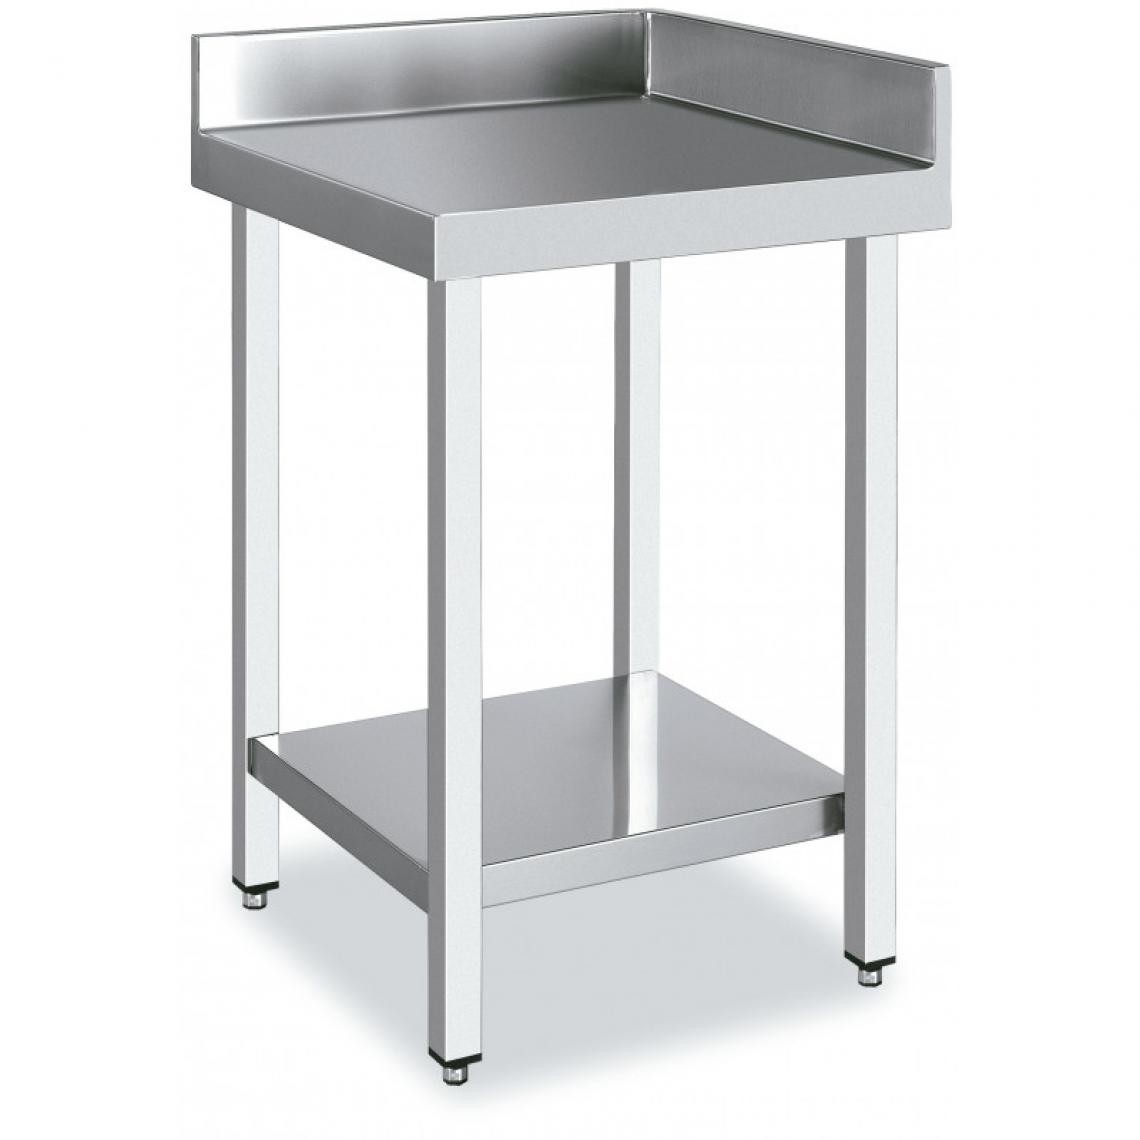 DISTFORM - Table d'Angle 90º Inox Avec une Etagère - Distform - Acier inoxydable600x700 - Tables à manger